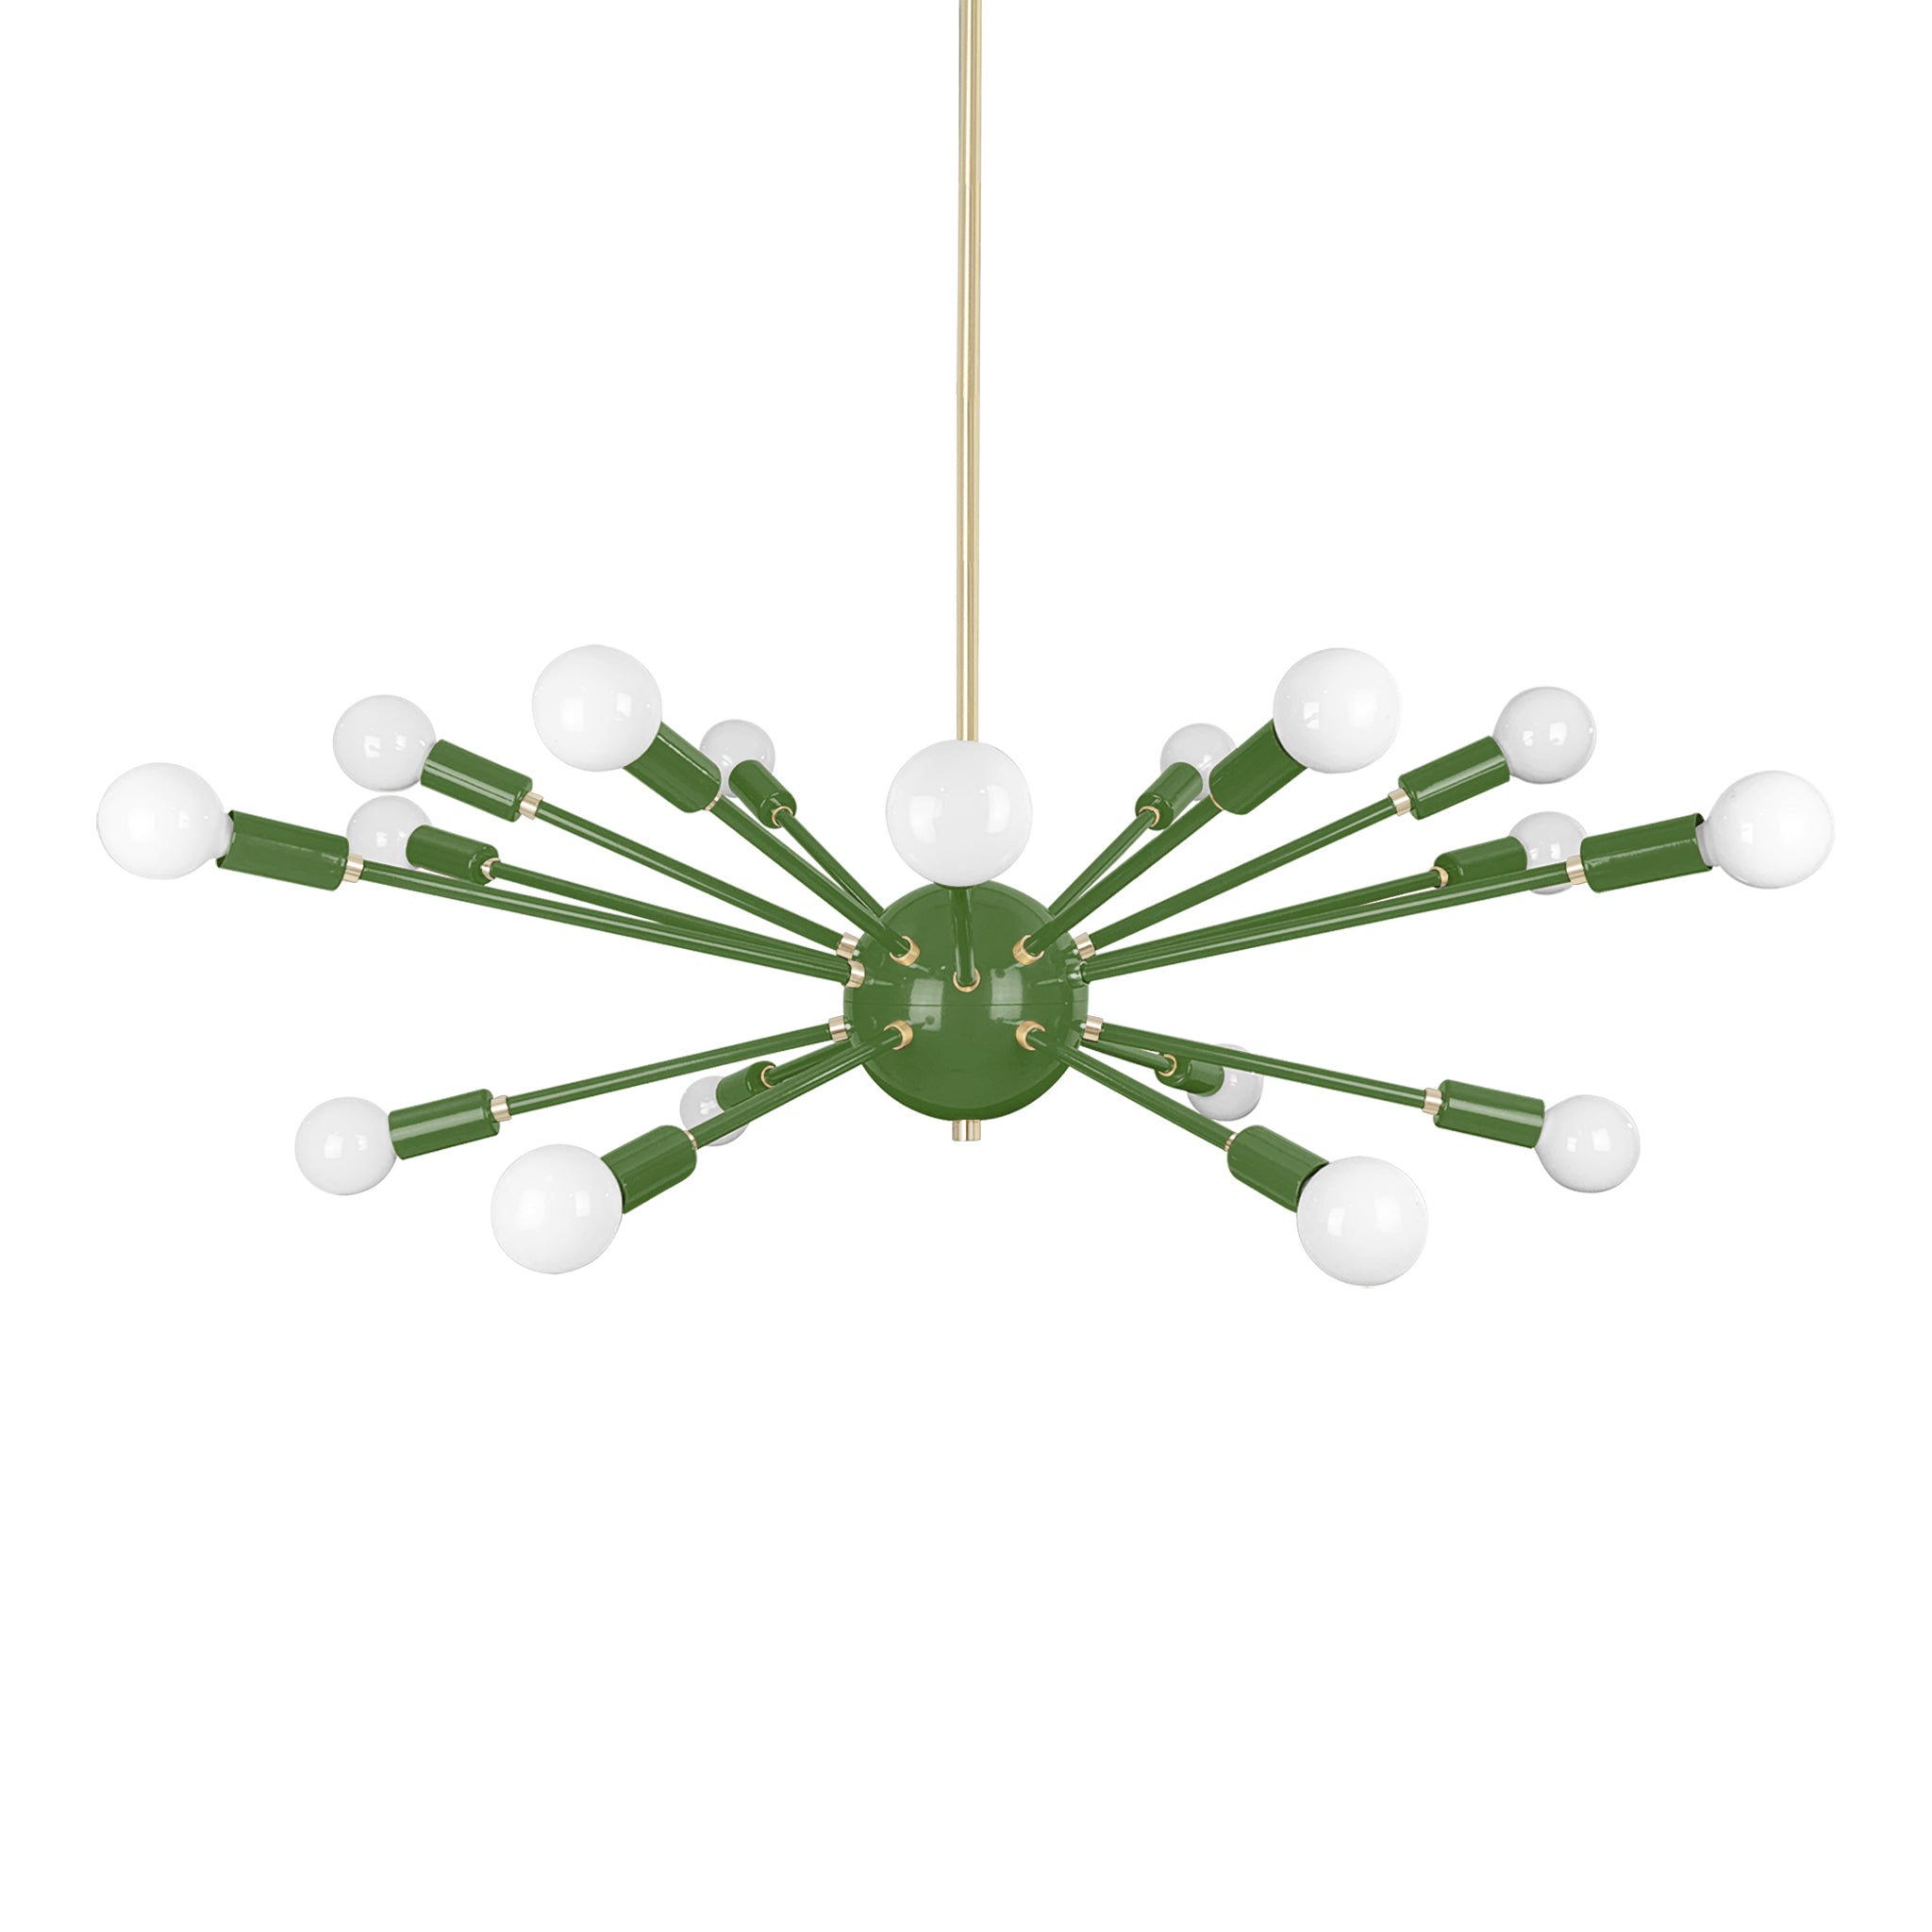 Brass and python green color Elliptical Sputnik chandelier 32" Dutton Brown lighting